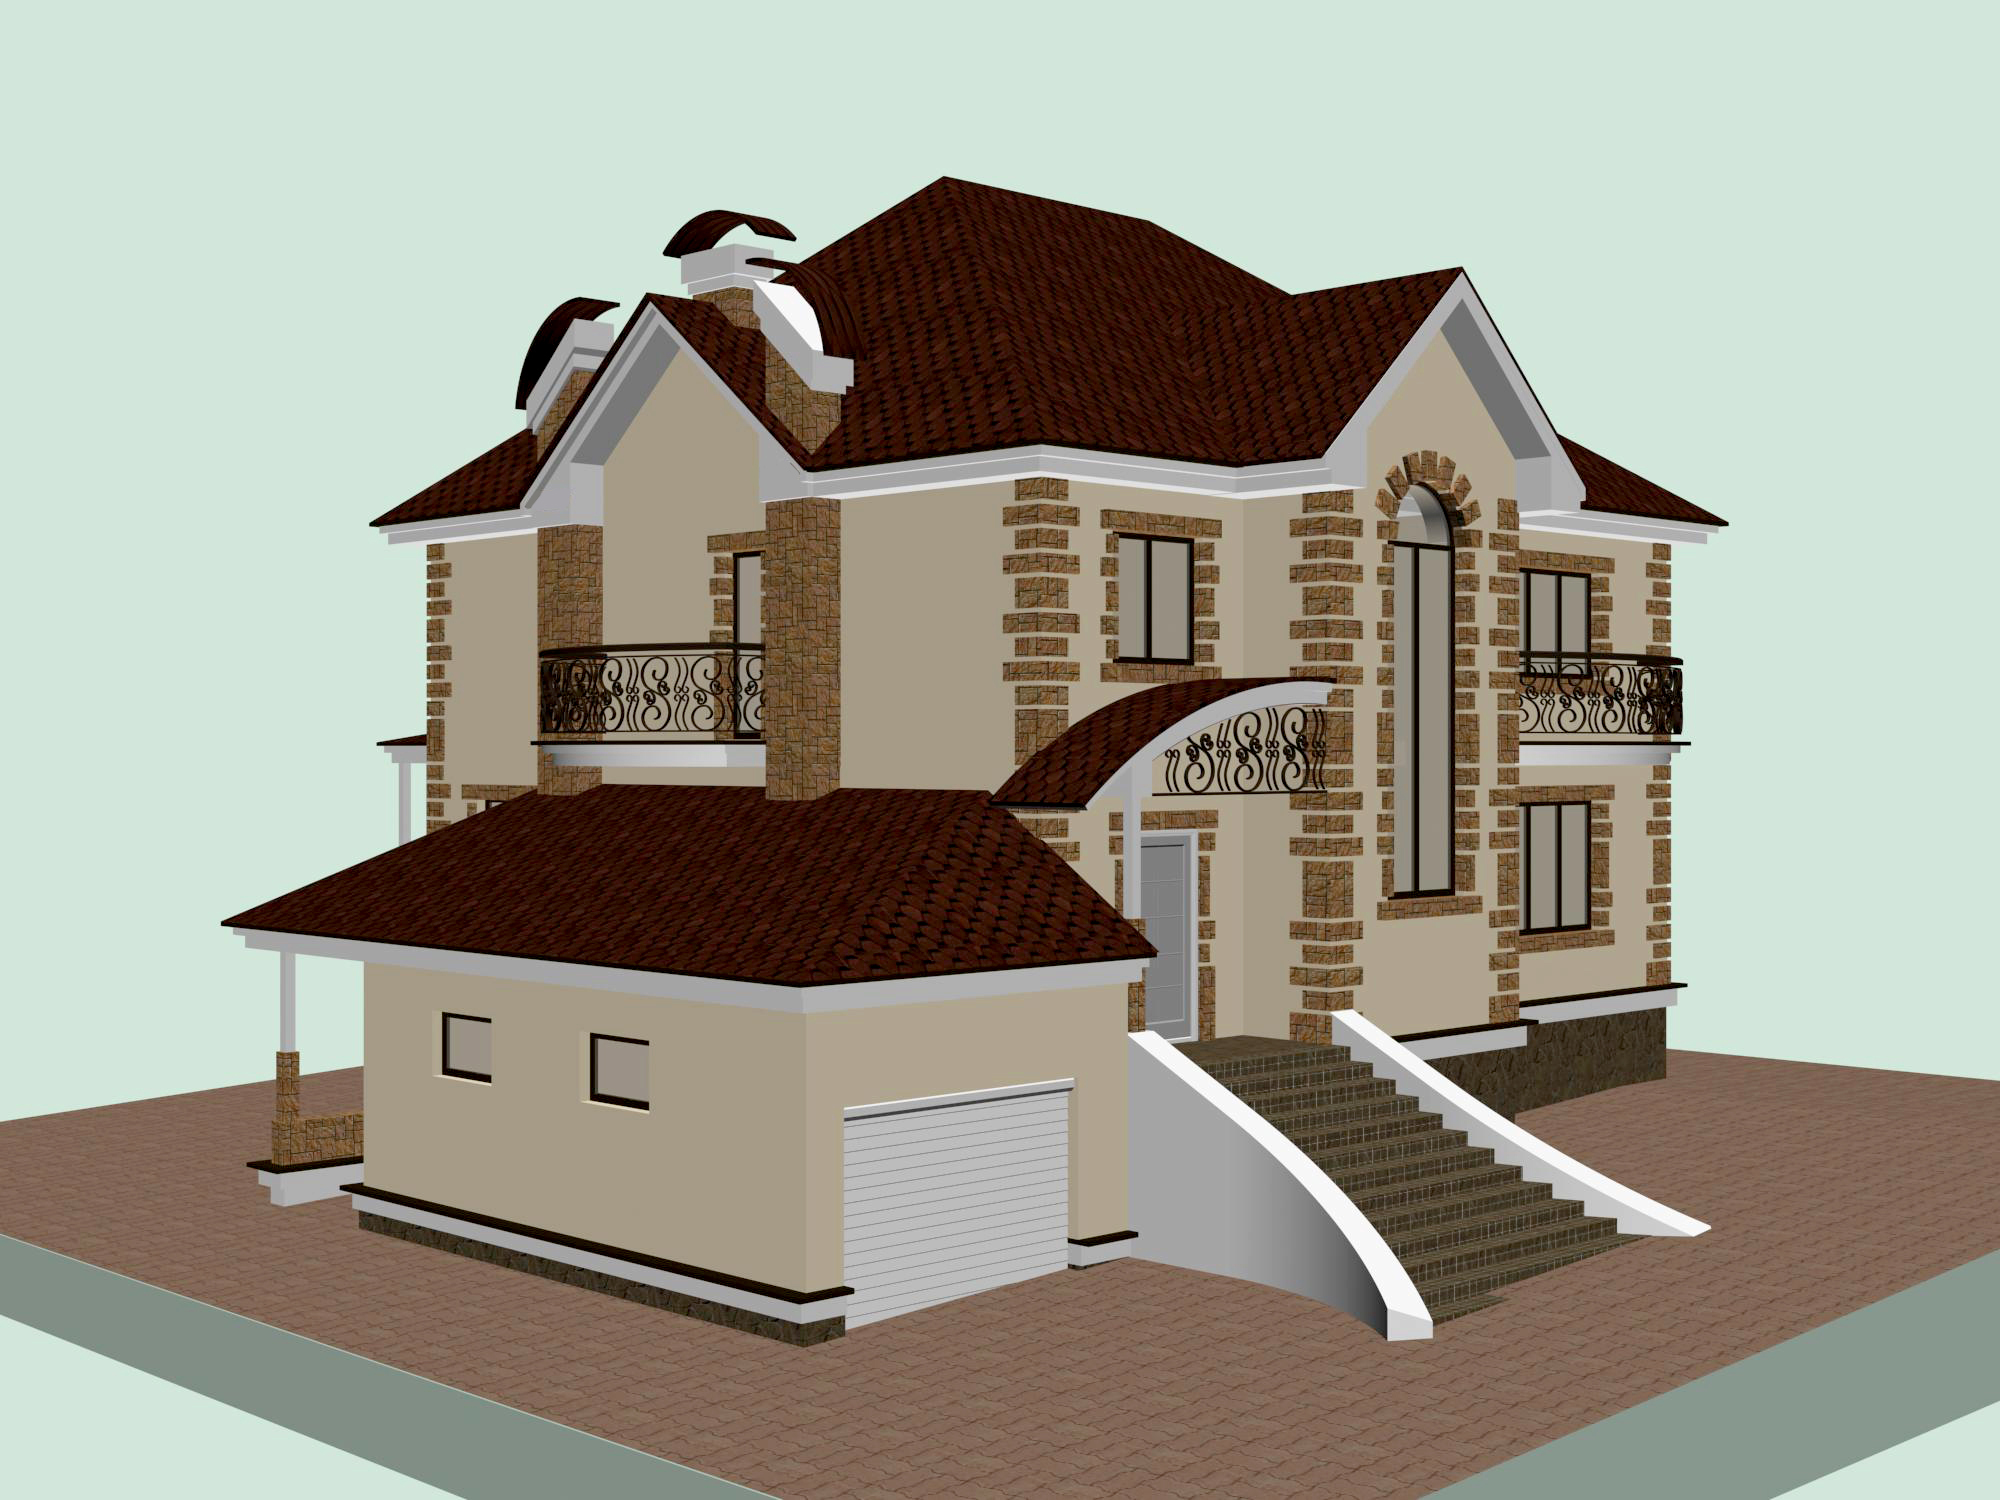 Проект дома сделать онлайн: PUZZLE HOME® — бесплатный онлайн-конфигуратор для проектирования дома в 3D